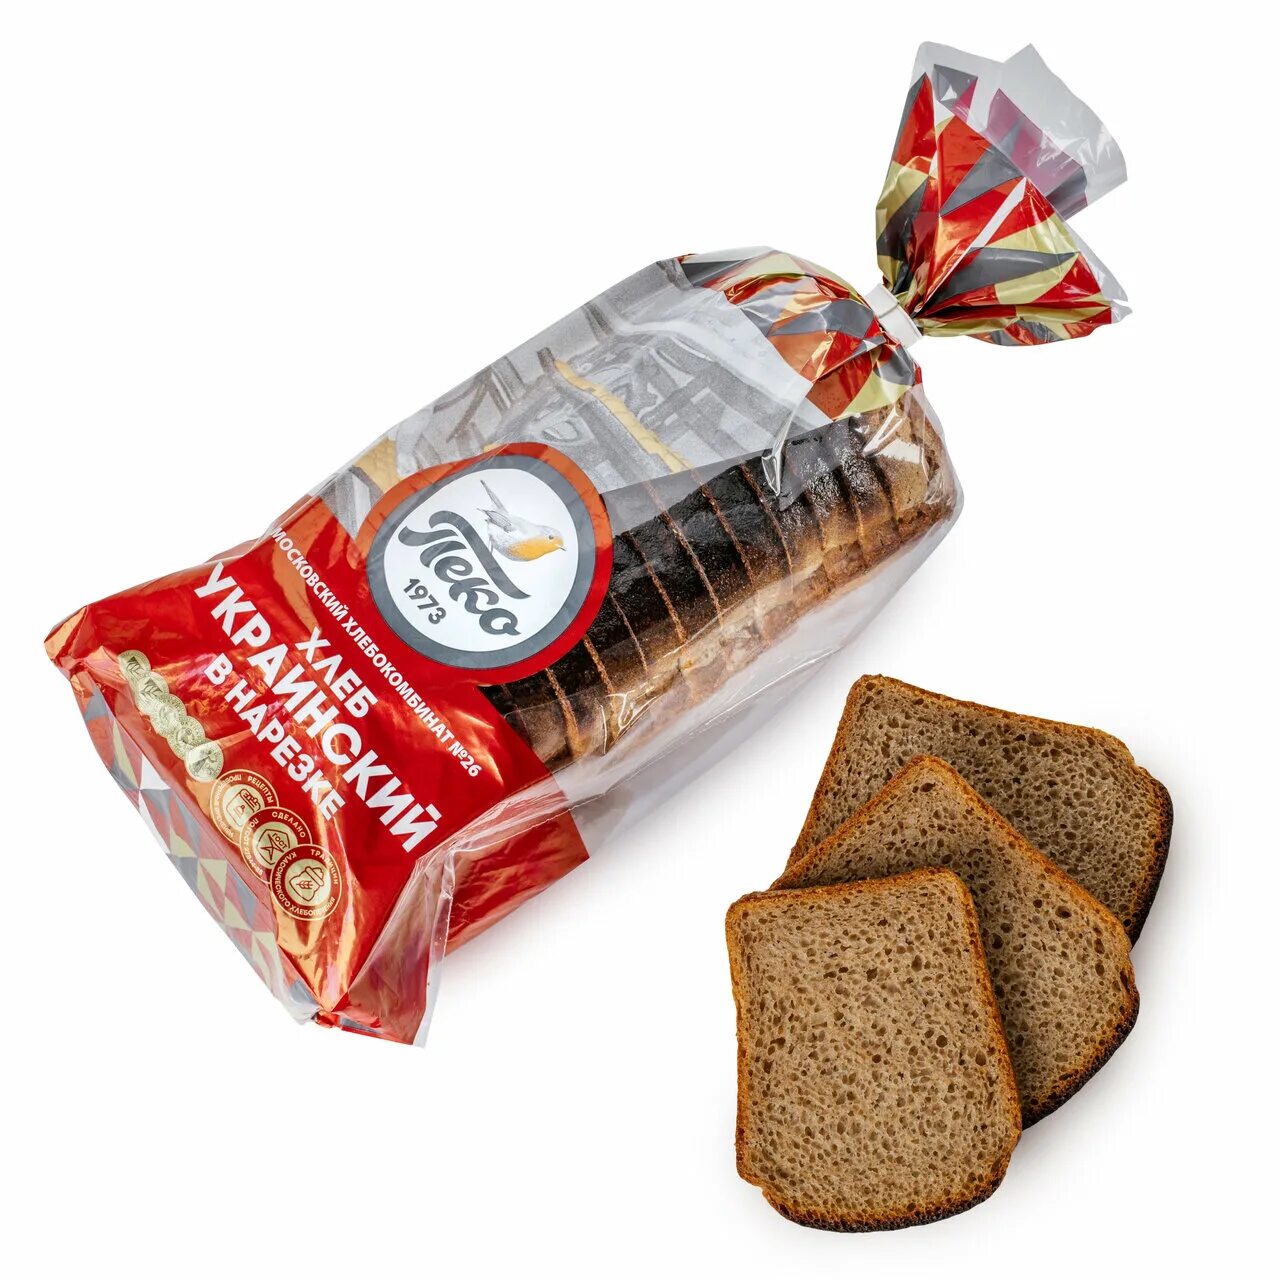 Пеко купить. Полярная 29 хлебокомбинат Пеко. Хлеб ржано-пшеничный заварной Пеко Медведковский. Хлеб Пеко Медведковский пшеничный. Хлебокомбинат Пеко хлеб украинский.